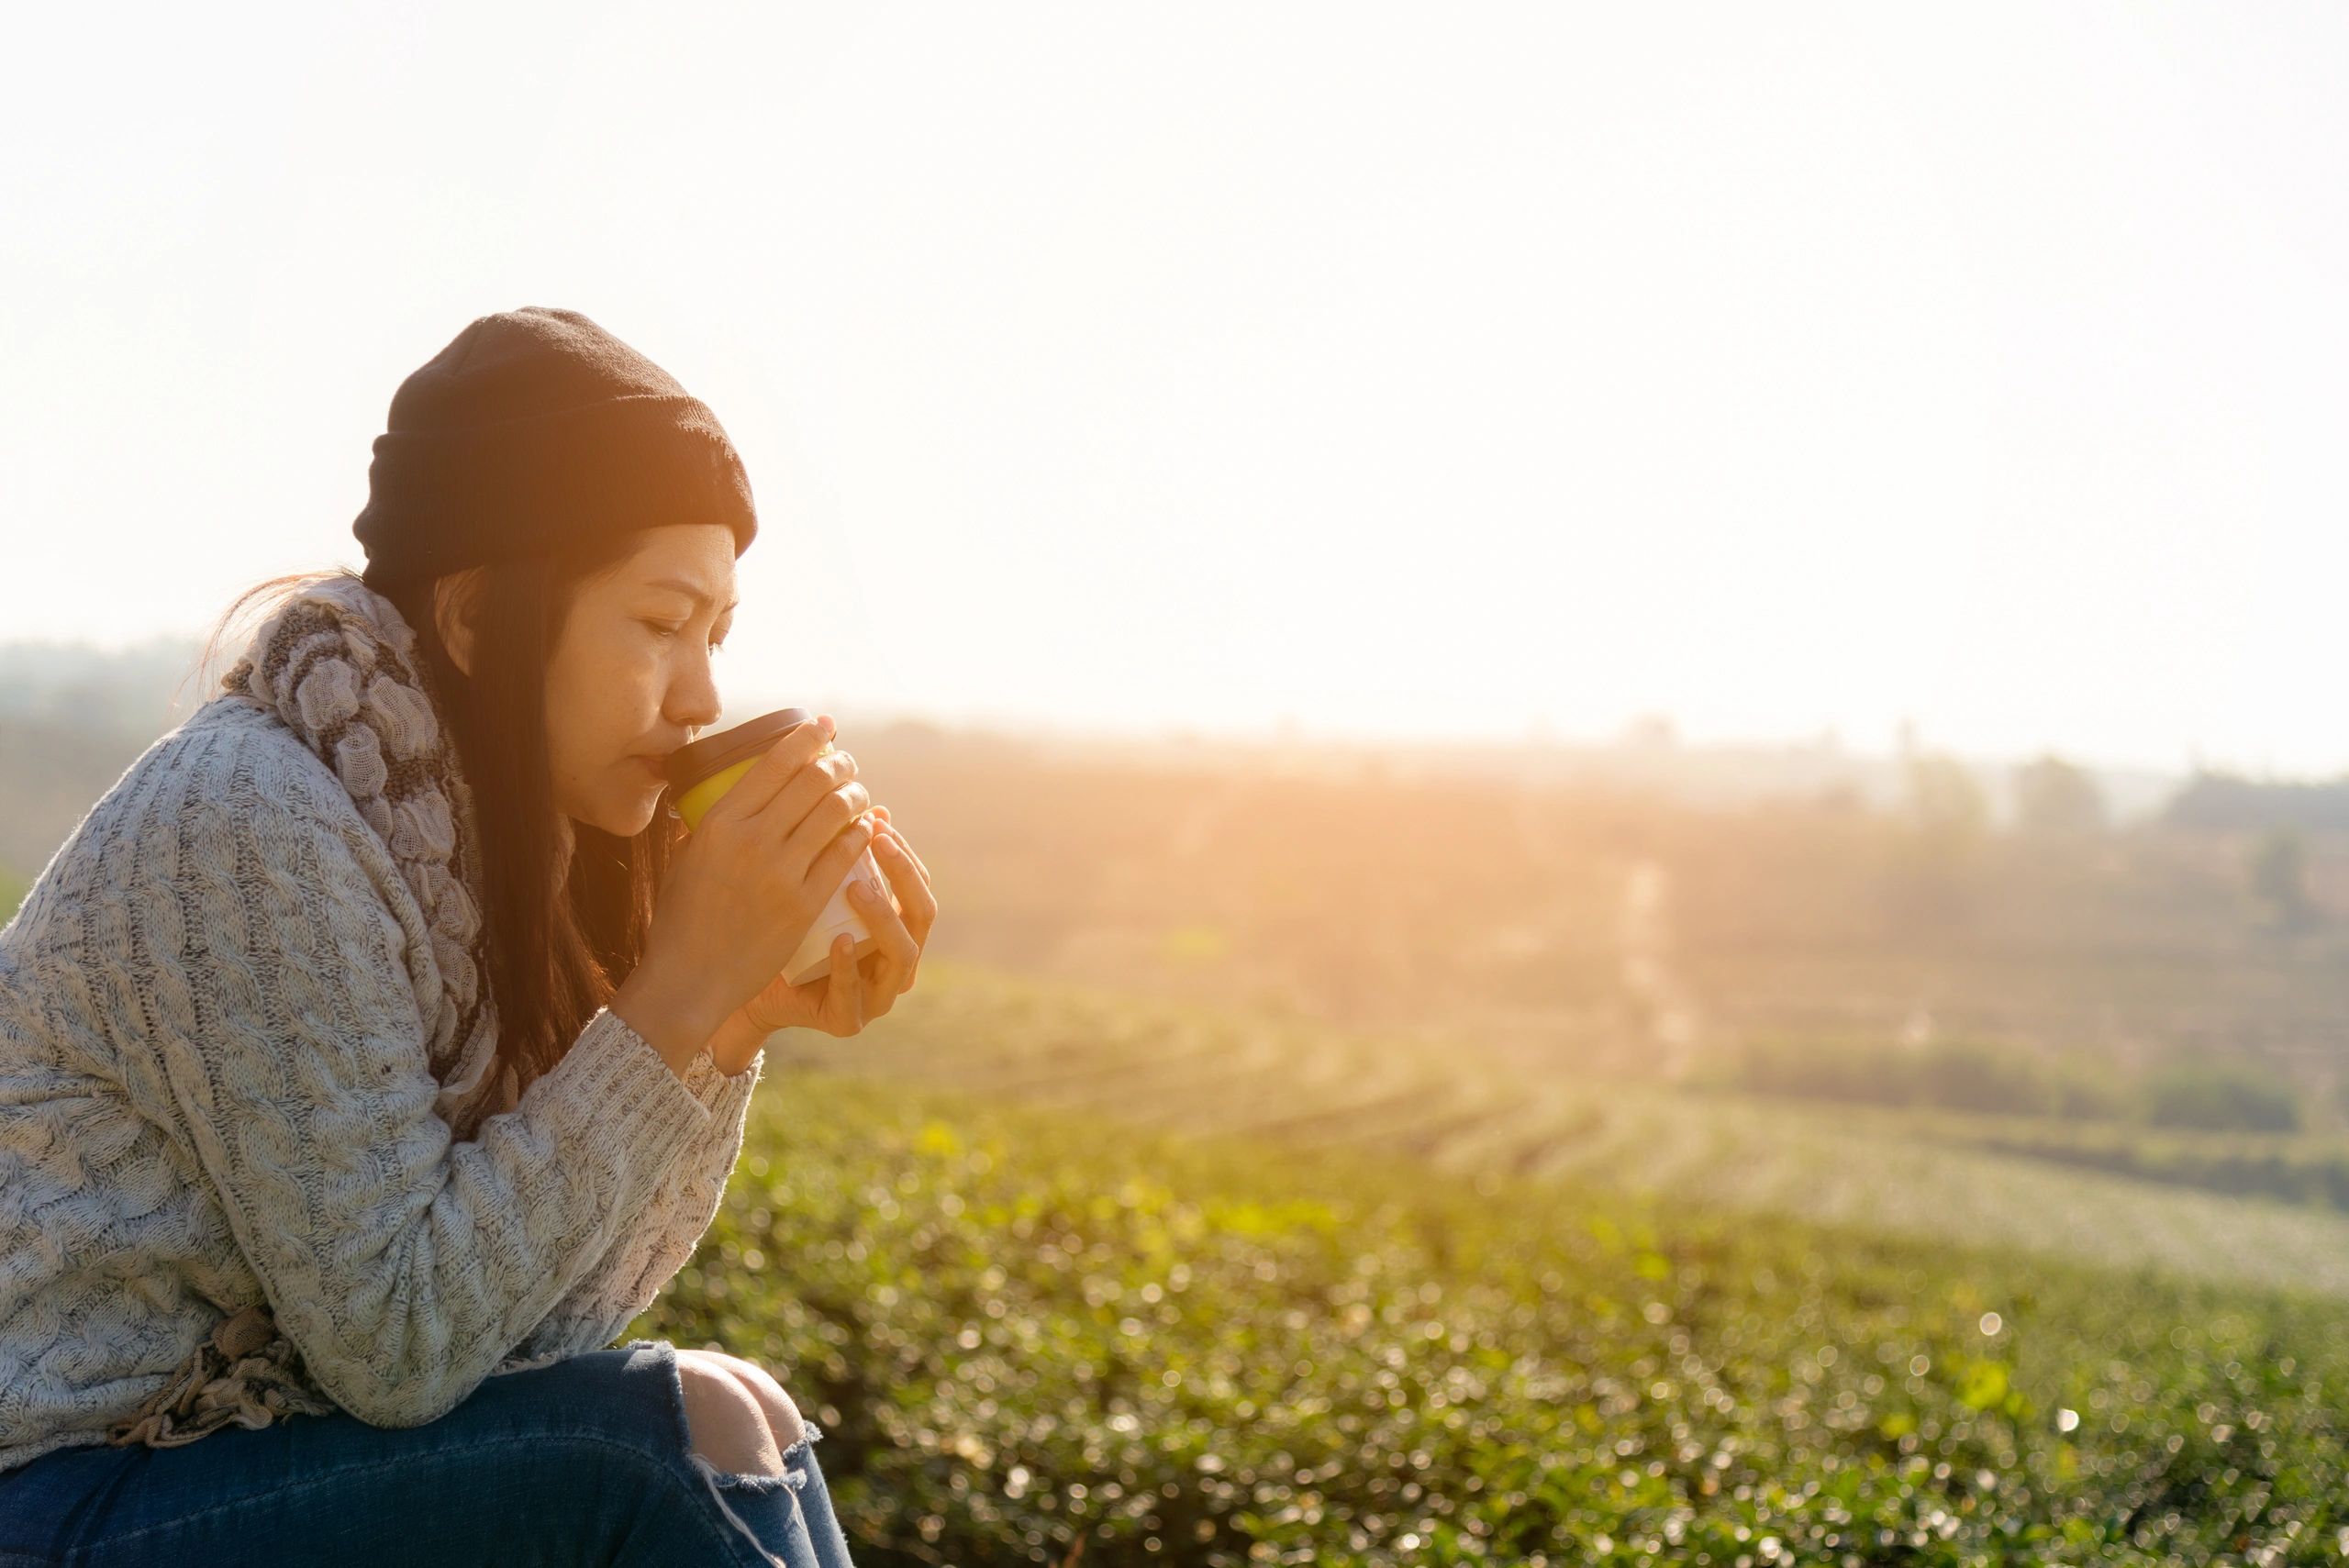 Woman in grey sweater drinking coffee/tea near open field.